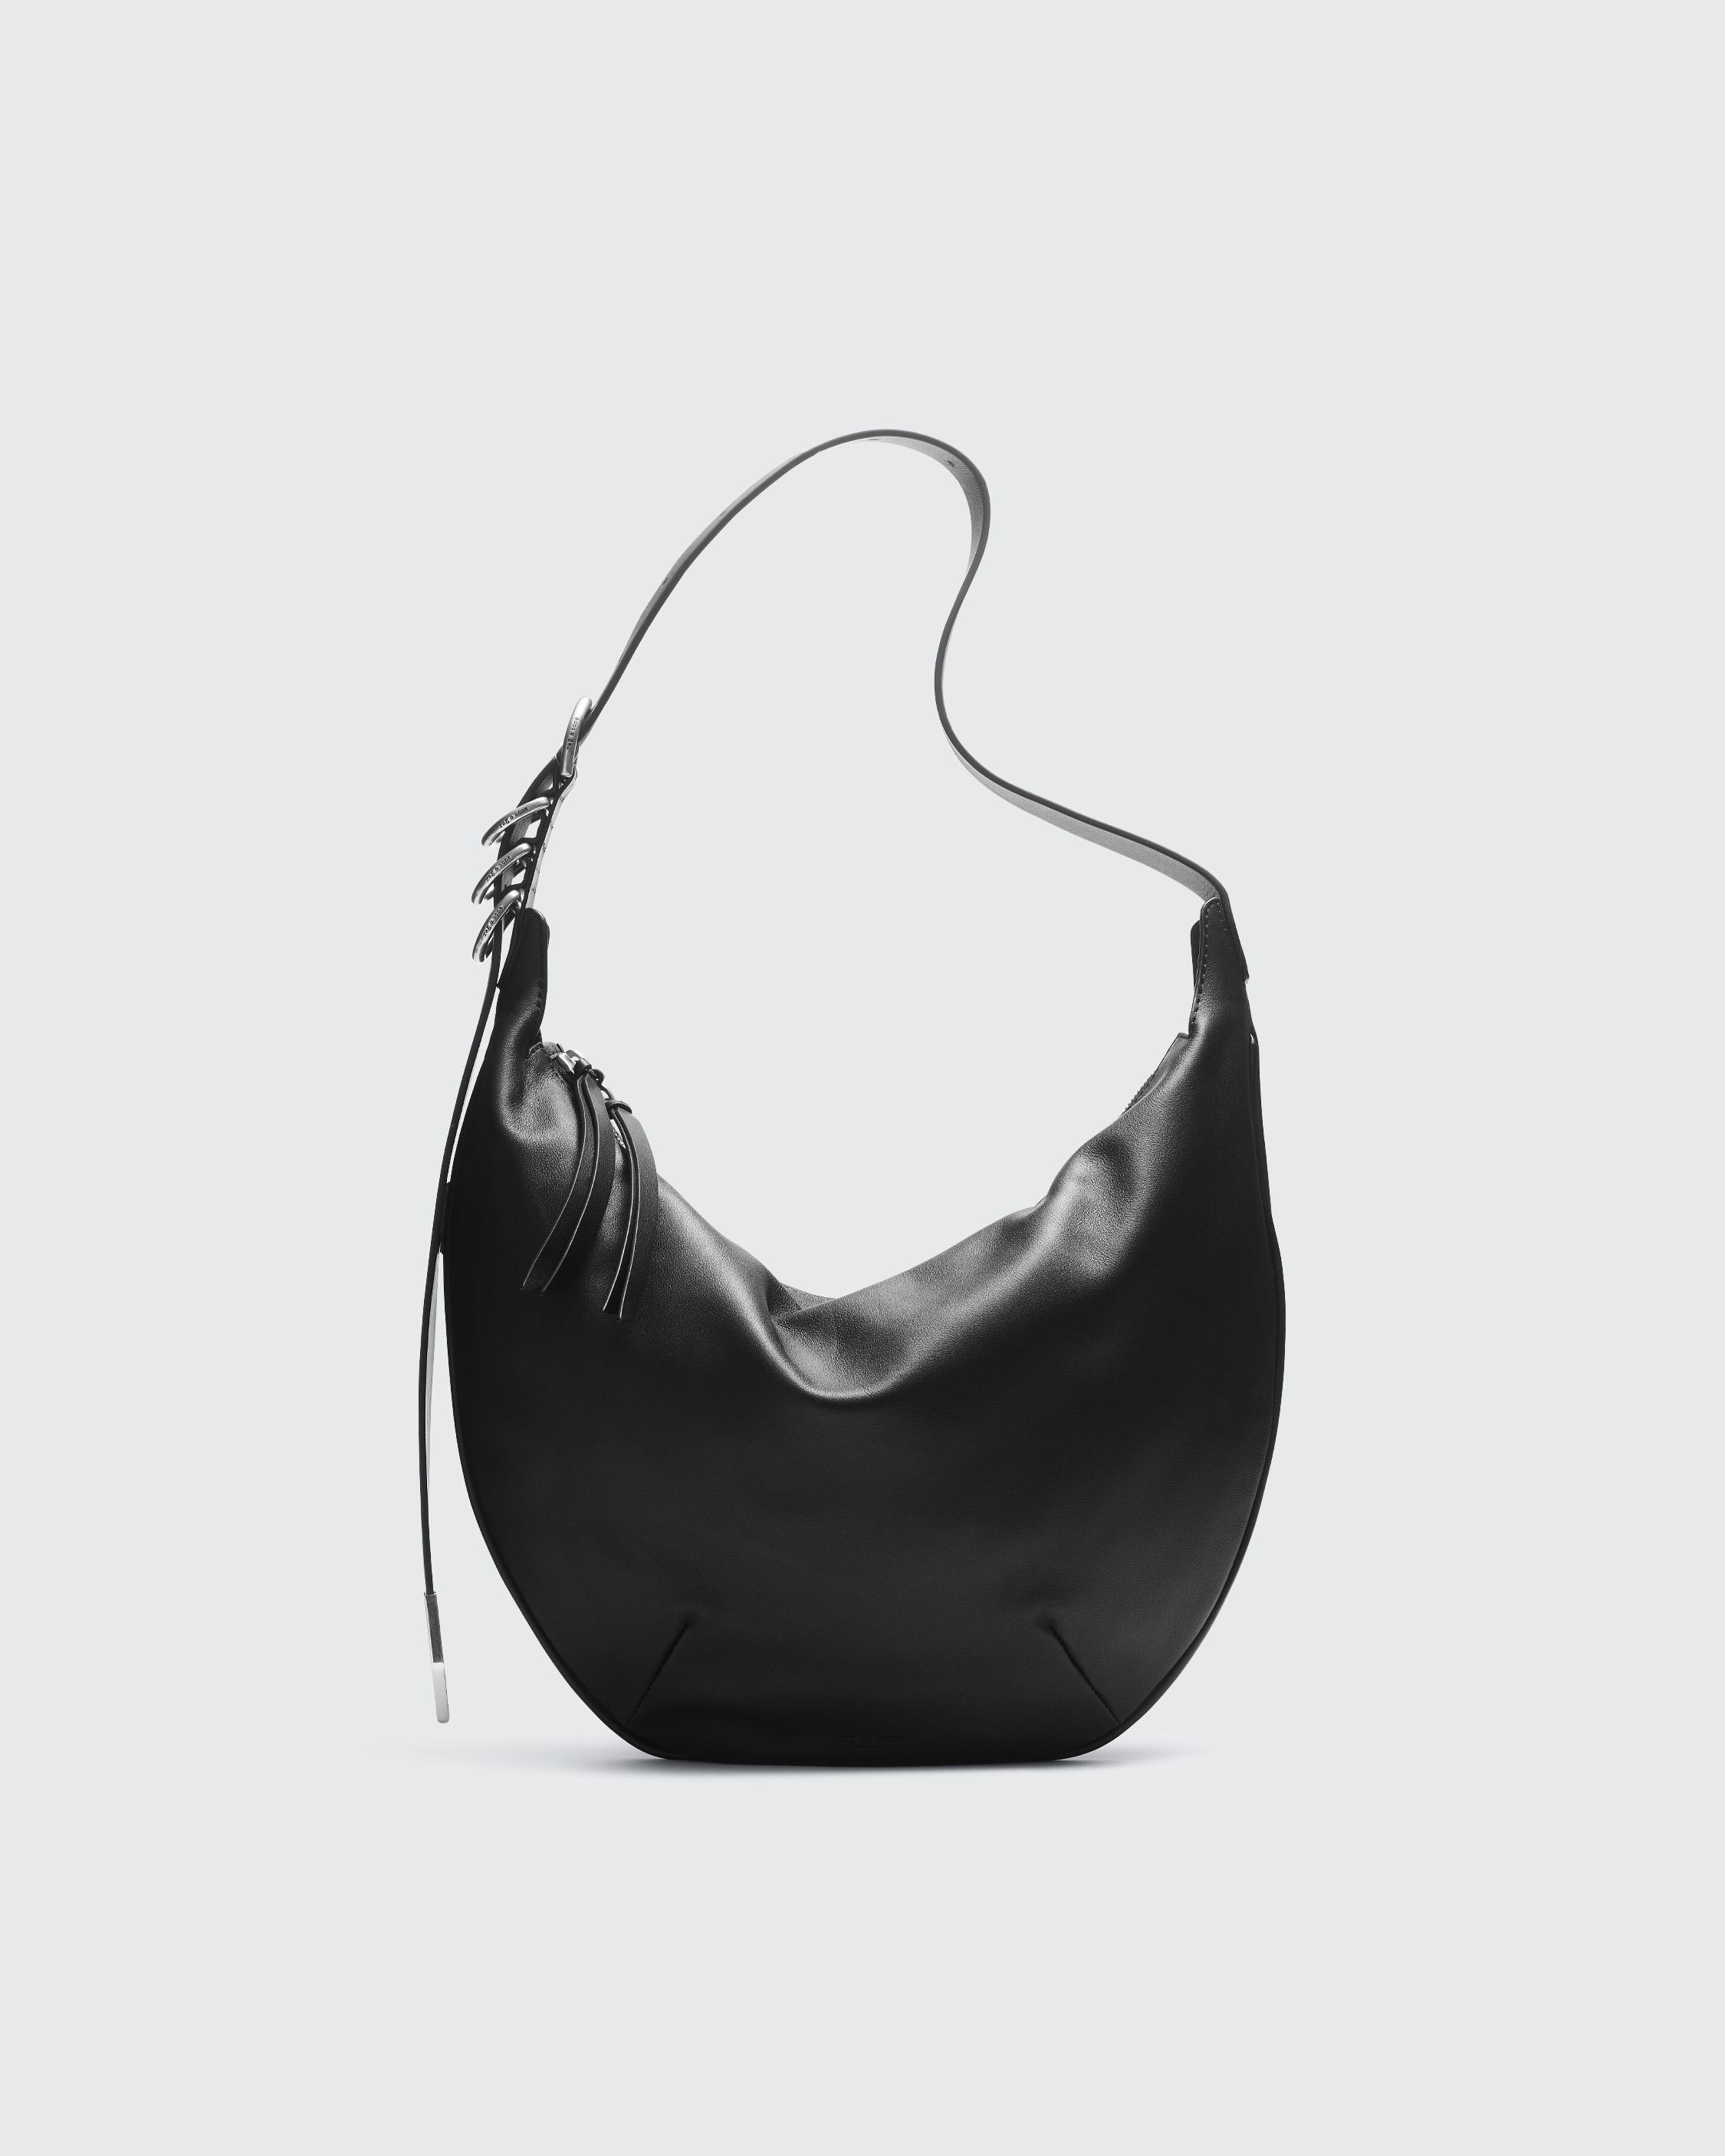 Spire Shoulder Bag - Leather
Medium Shoulder Bag - 1